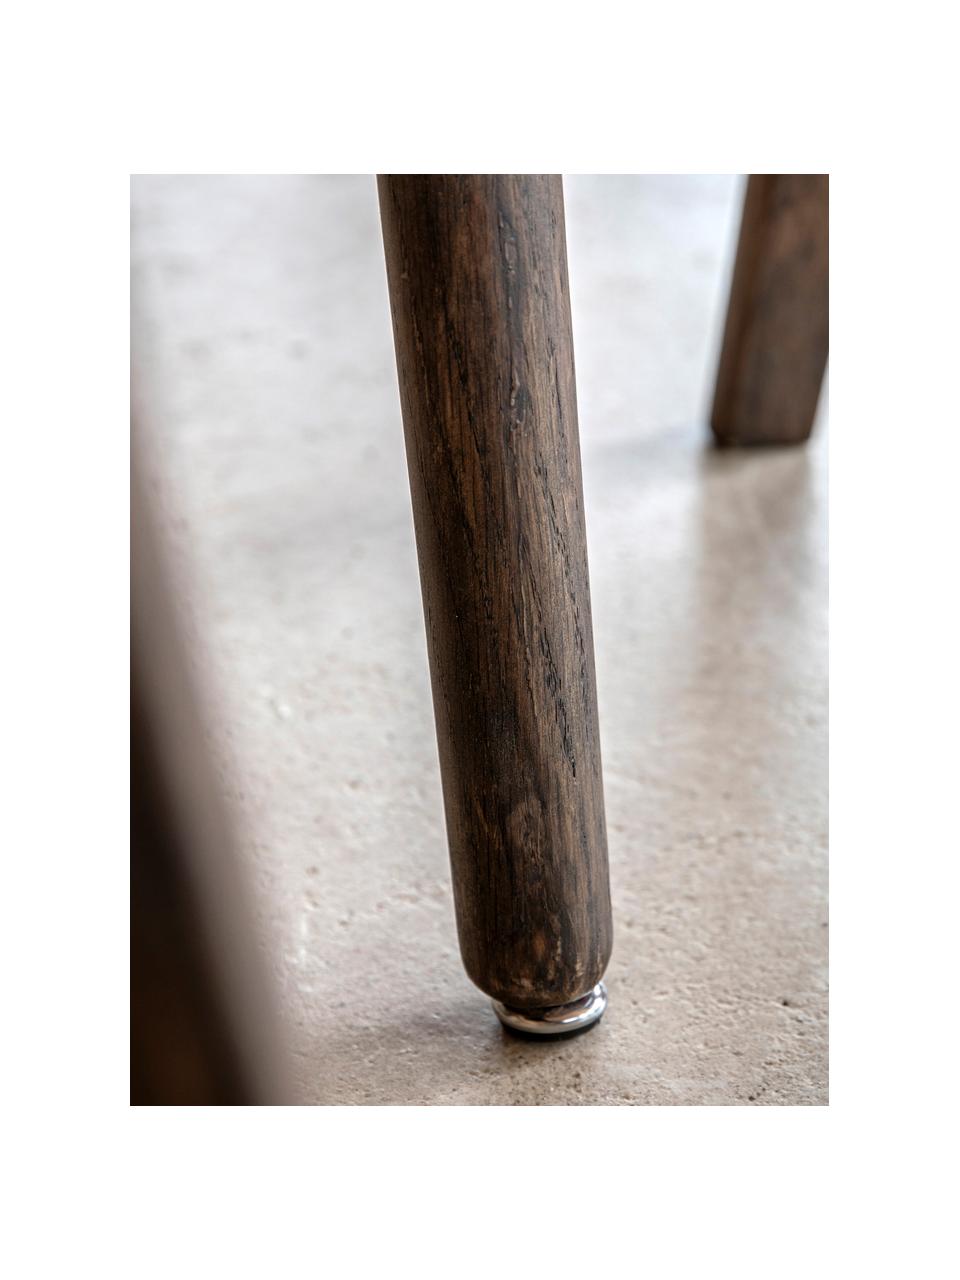 Table ronde en bois Hatfield, Ø 110 cm, Bois de chêne foncé laqué, Ø 110 cm